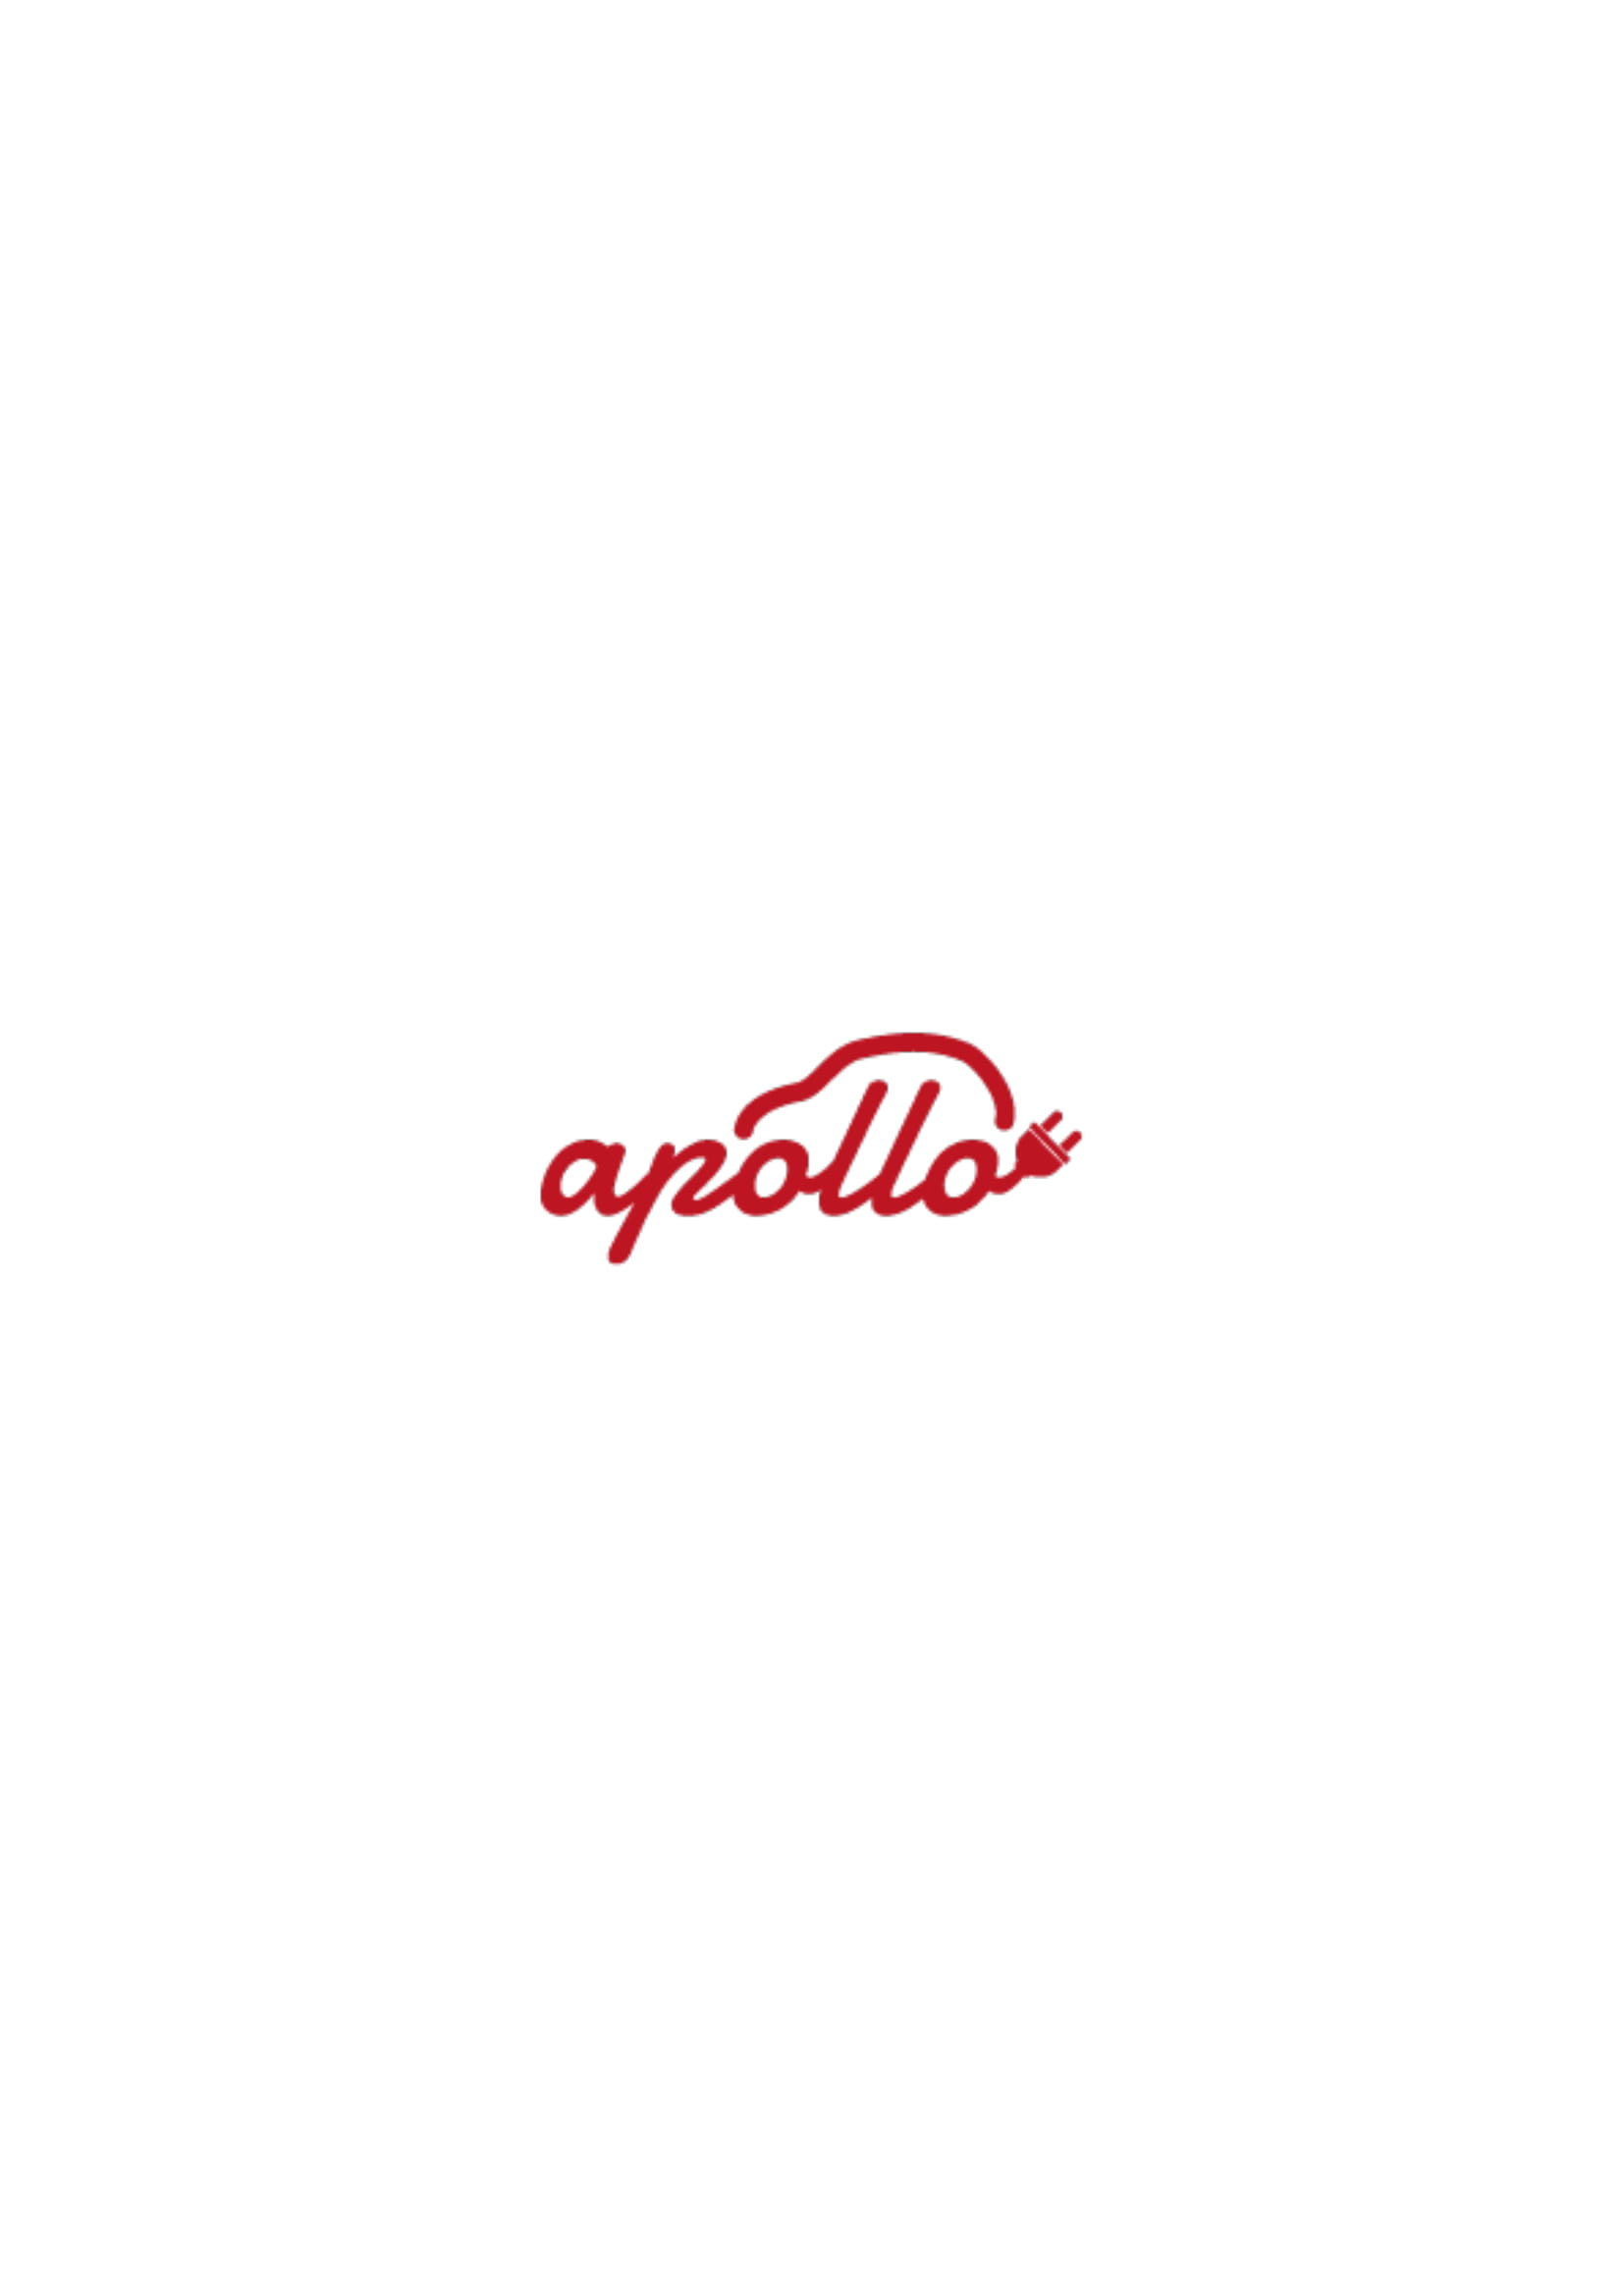 Apollo Faciliites Services Ltd